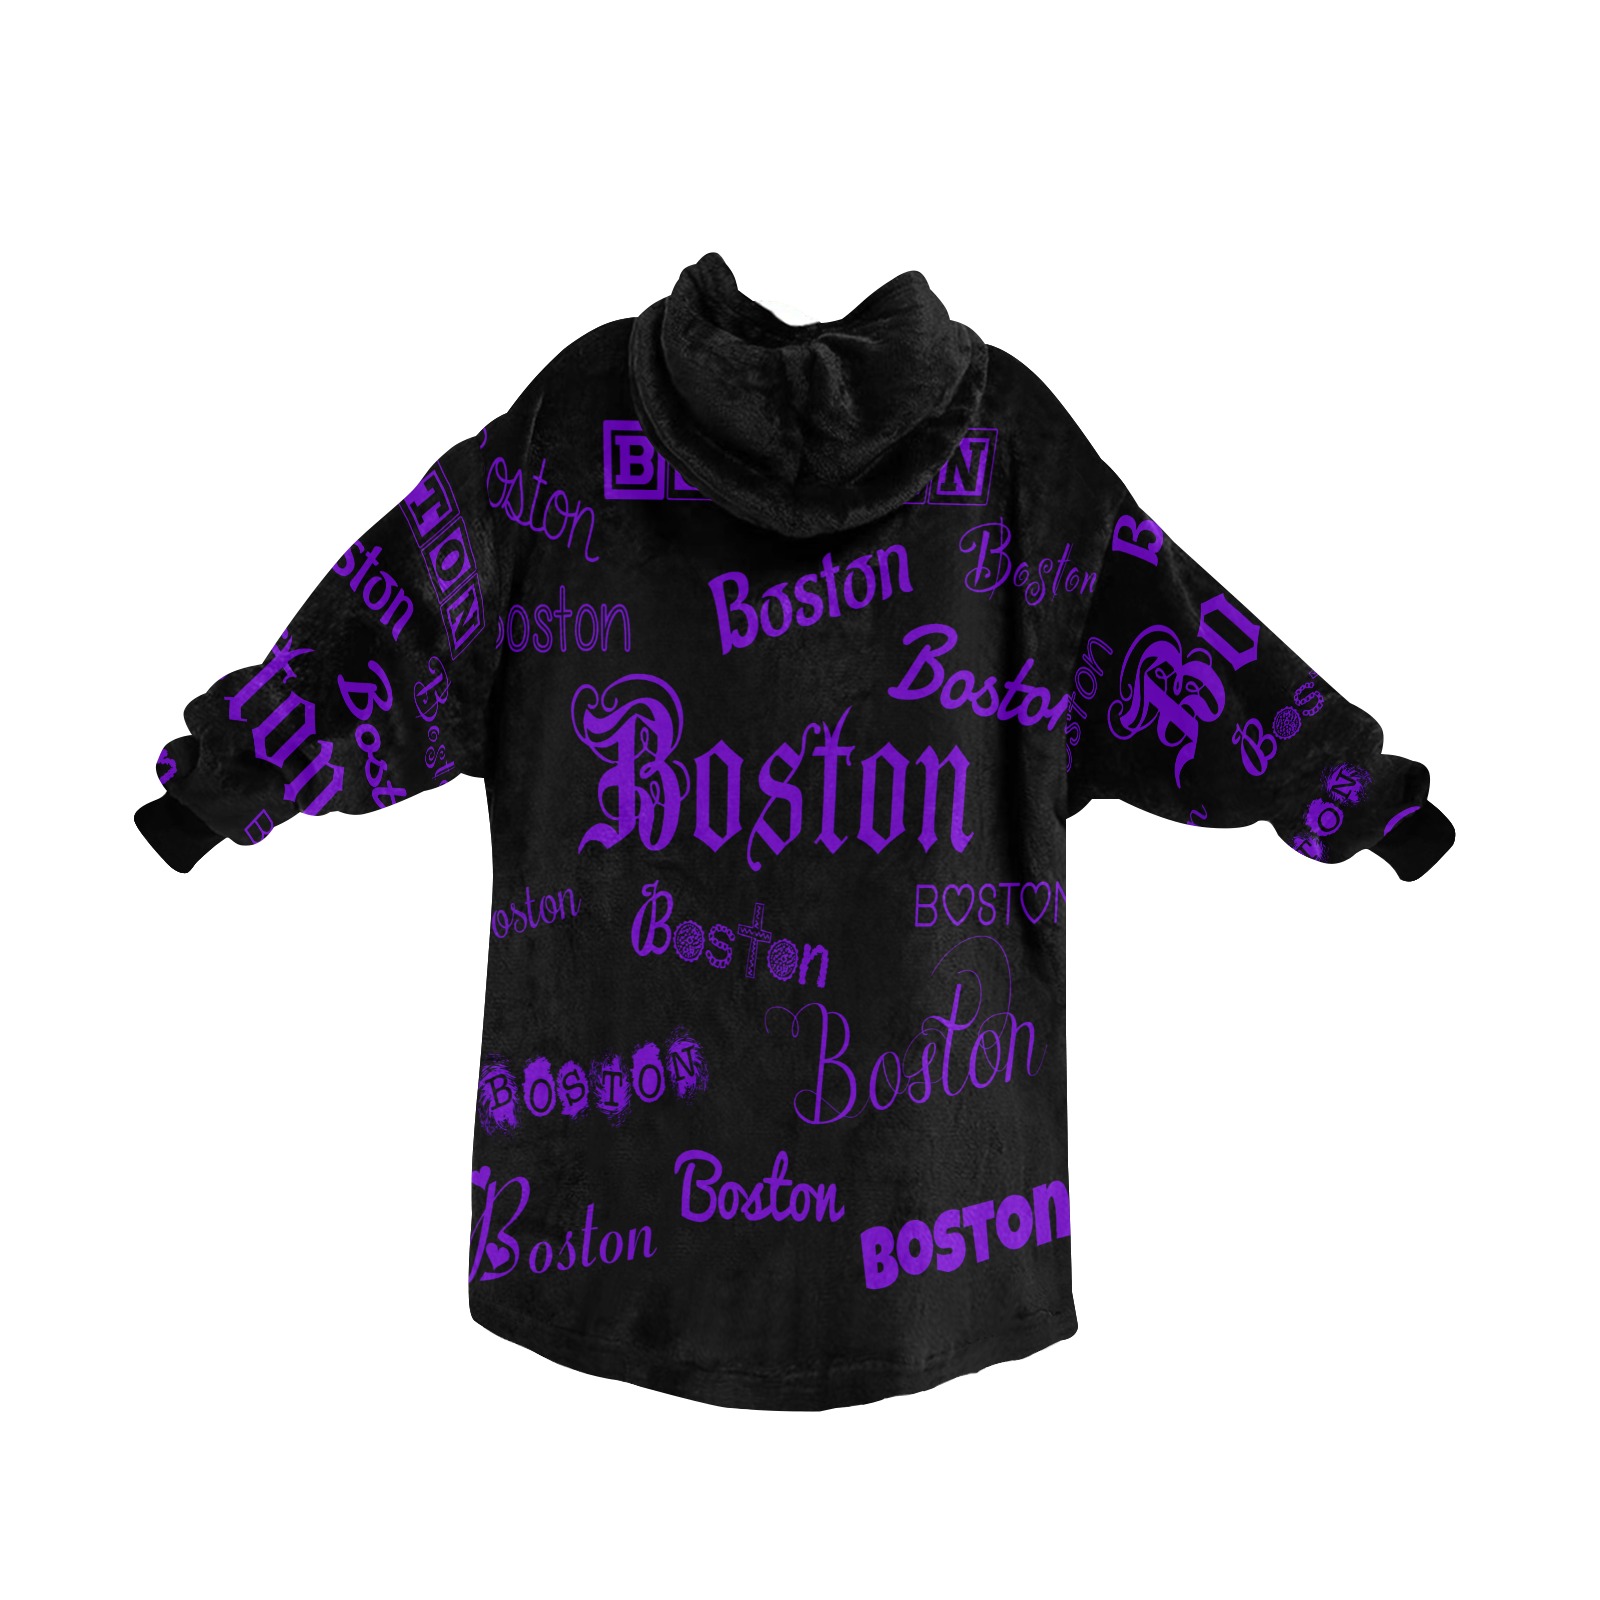 Boston Purple Fonts on Black Blanket Hoodie for Women